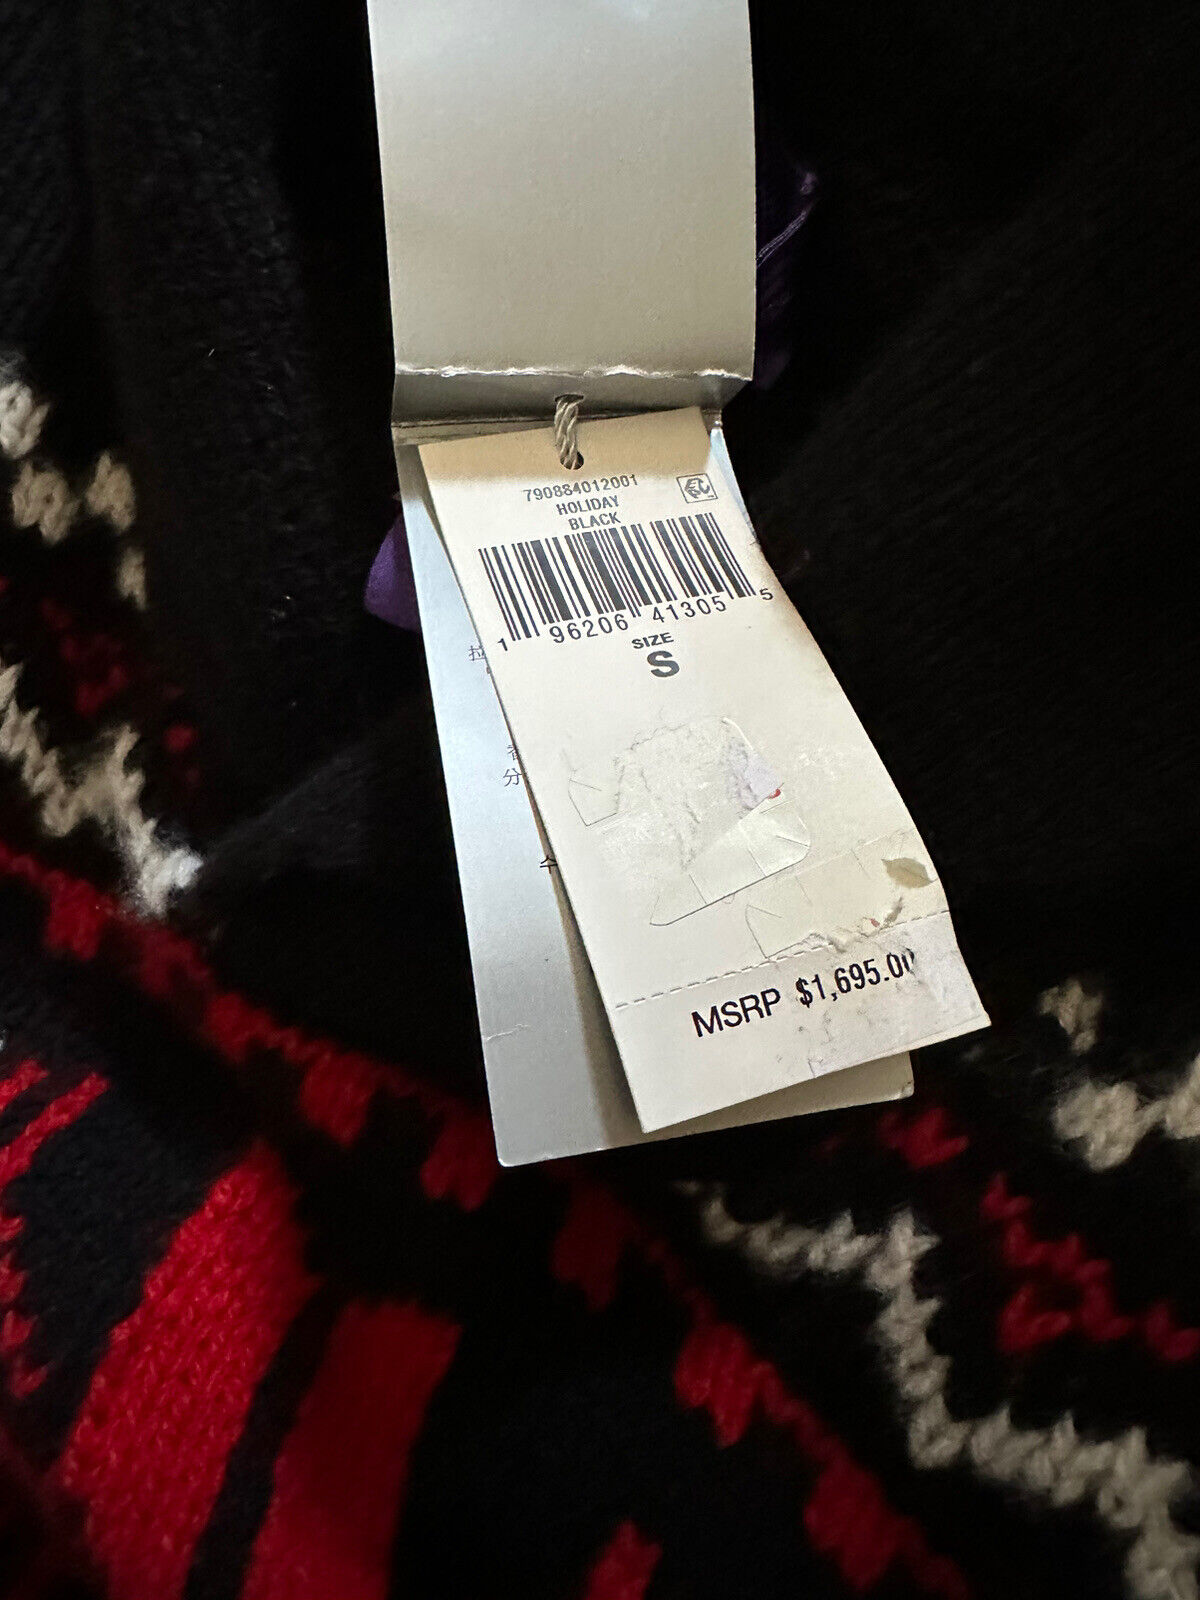 NWT $1695 Ralph Lauren Purple Label Мужской кашемировый свитер с шалью, черный, размер S